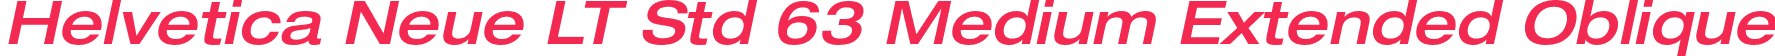 Helvetica Neue LT Std 63 Medium Extended Oblique